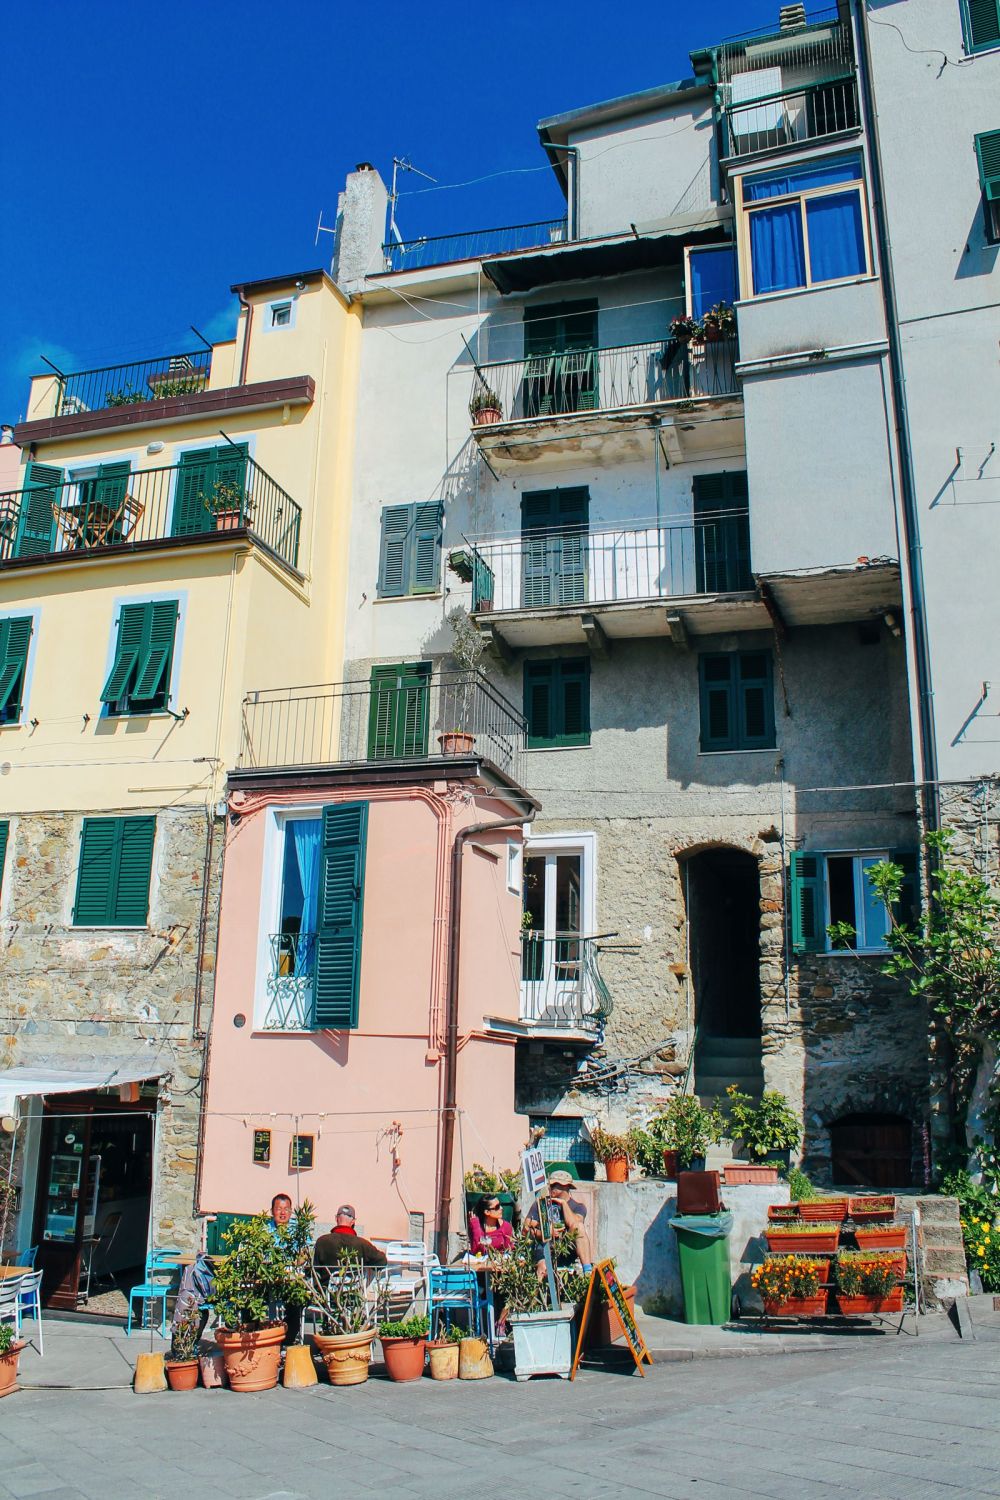 Corniglia in Cinque Terre, Italy - The Photo Diary! [3 of 5] (18)